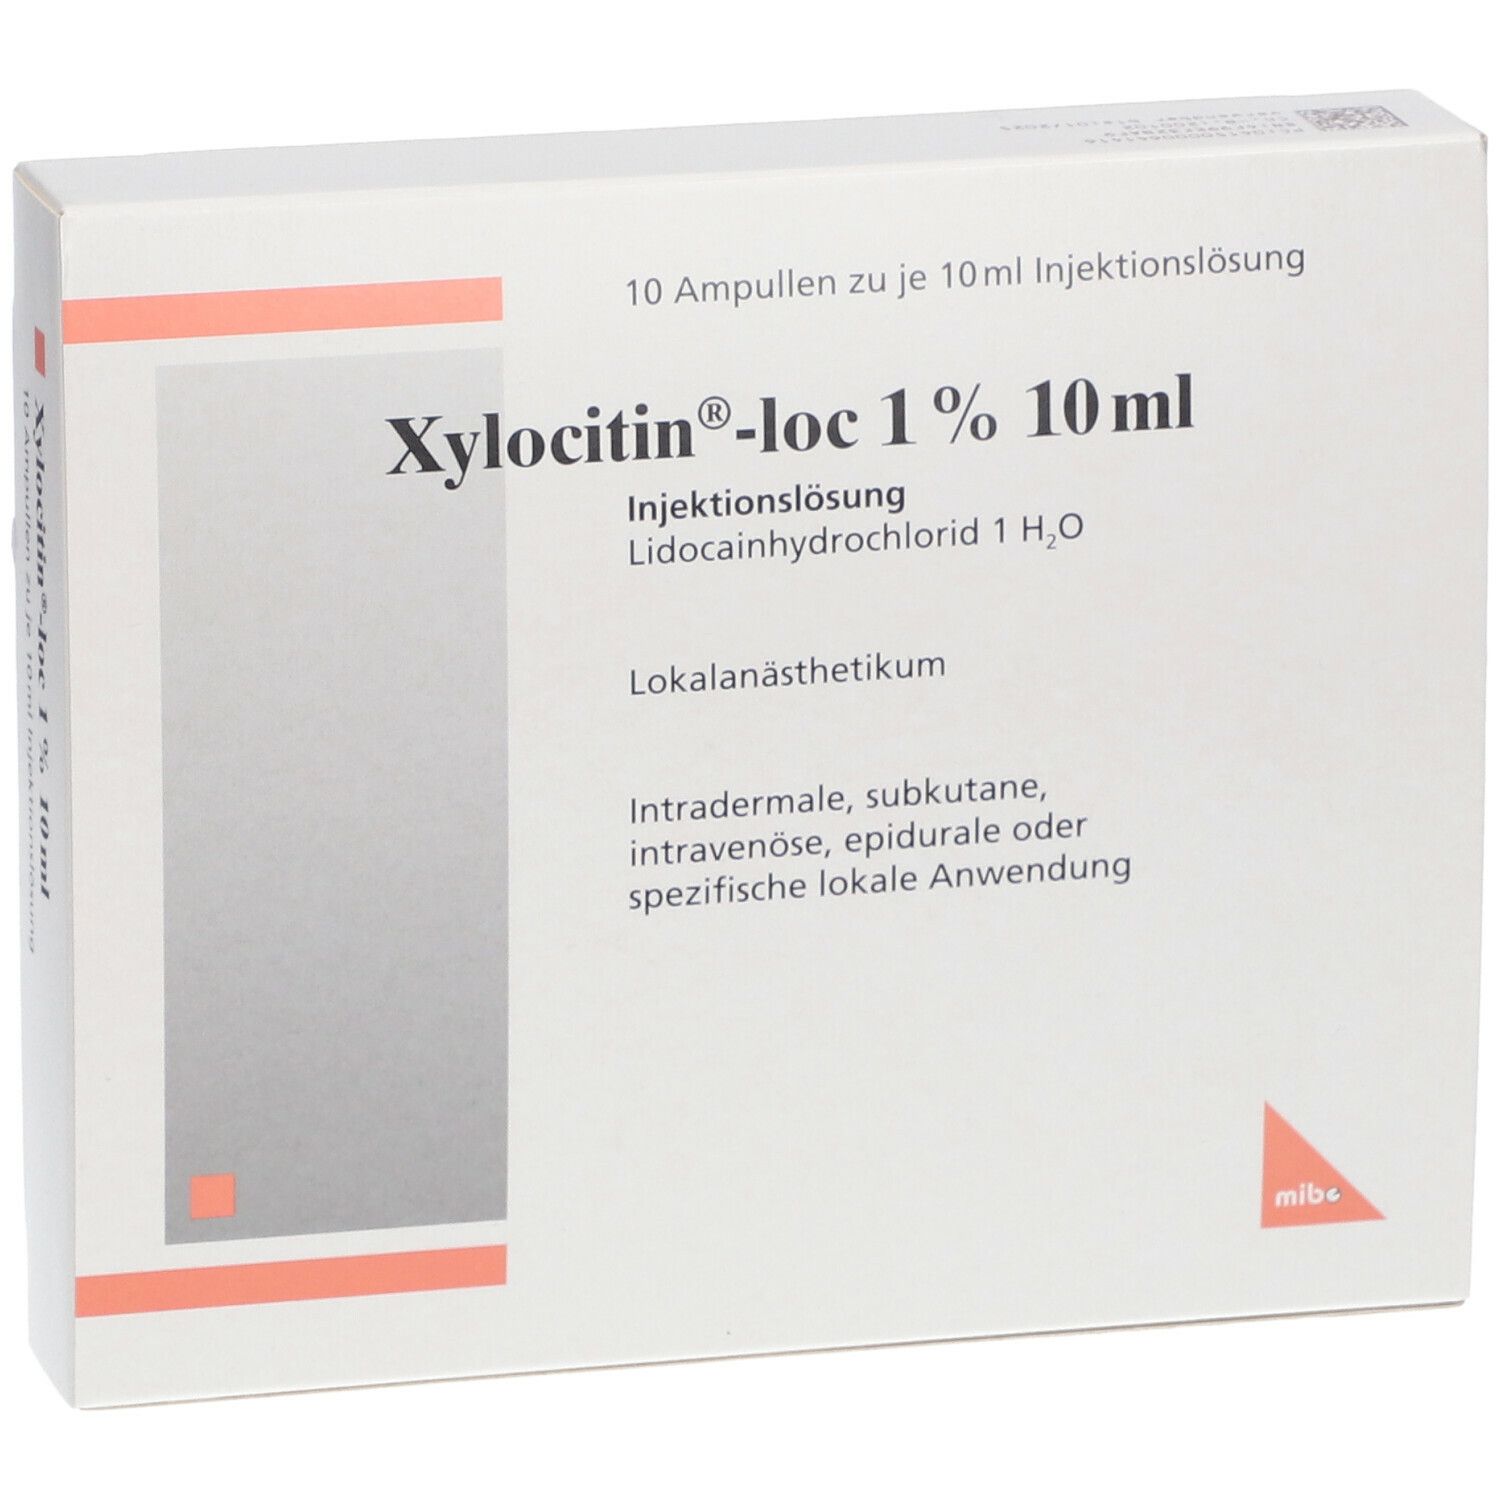 Xylocitin®-loc 1% 10 ml